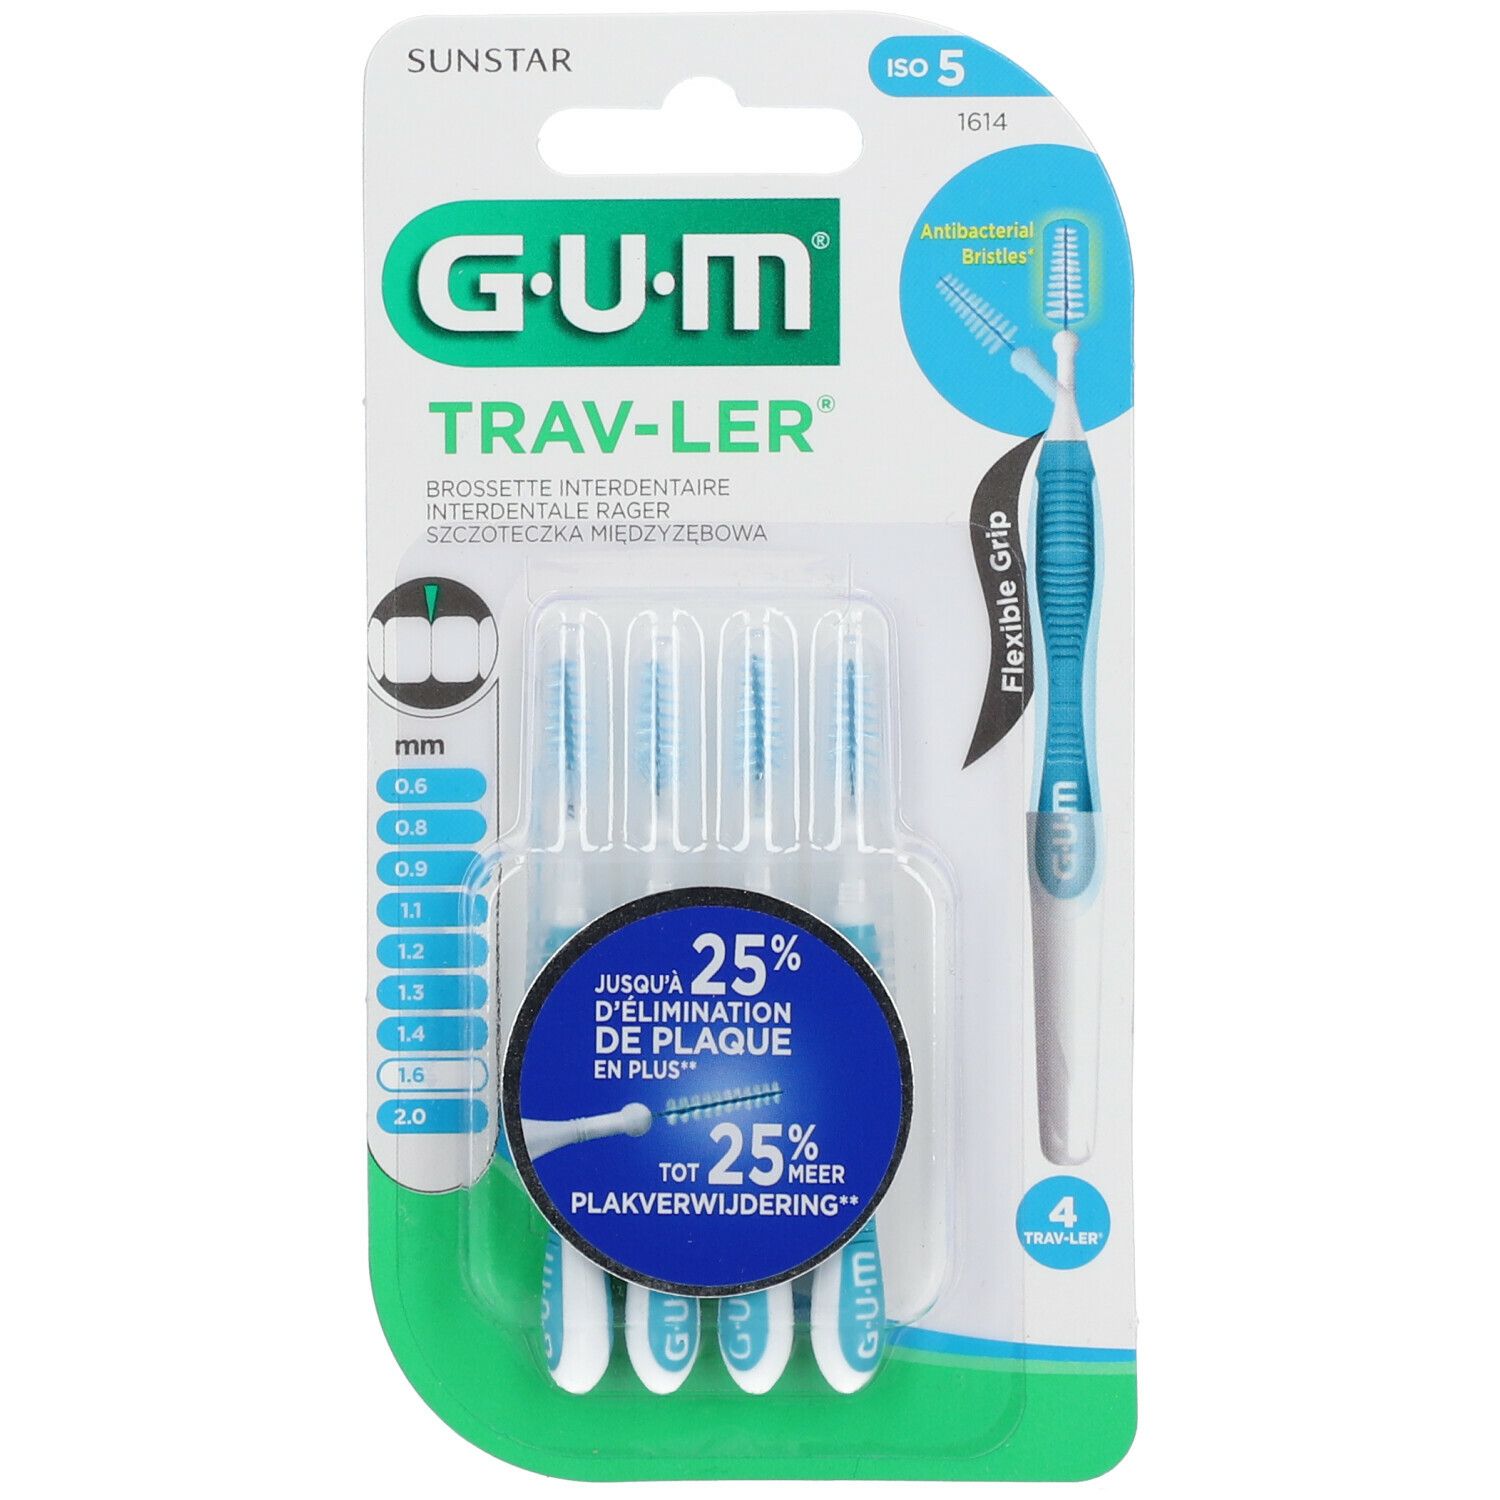 Gum® Proxabrush Trav-ler brossette interdentaire 1.6 mm